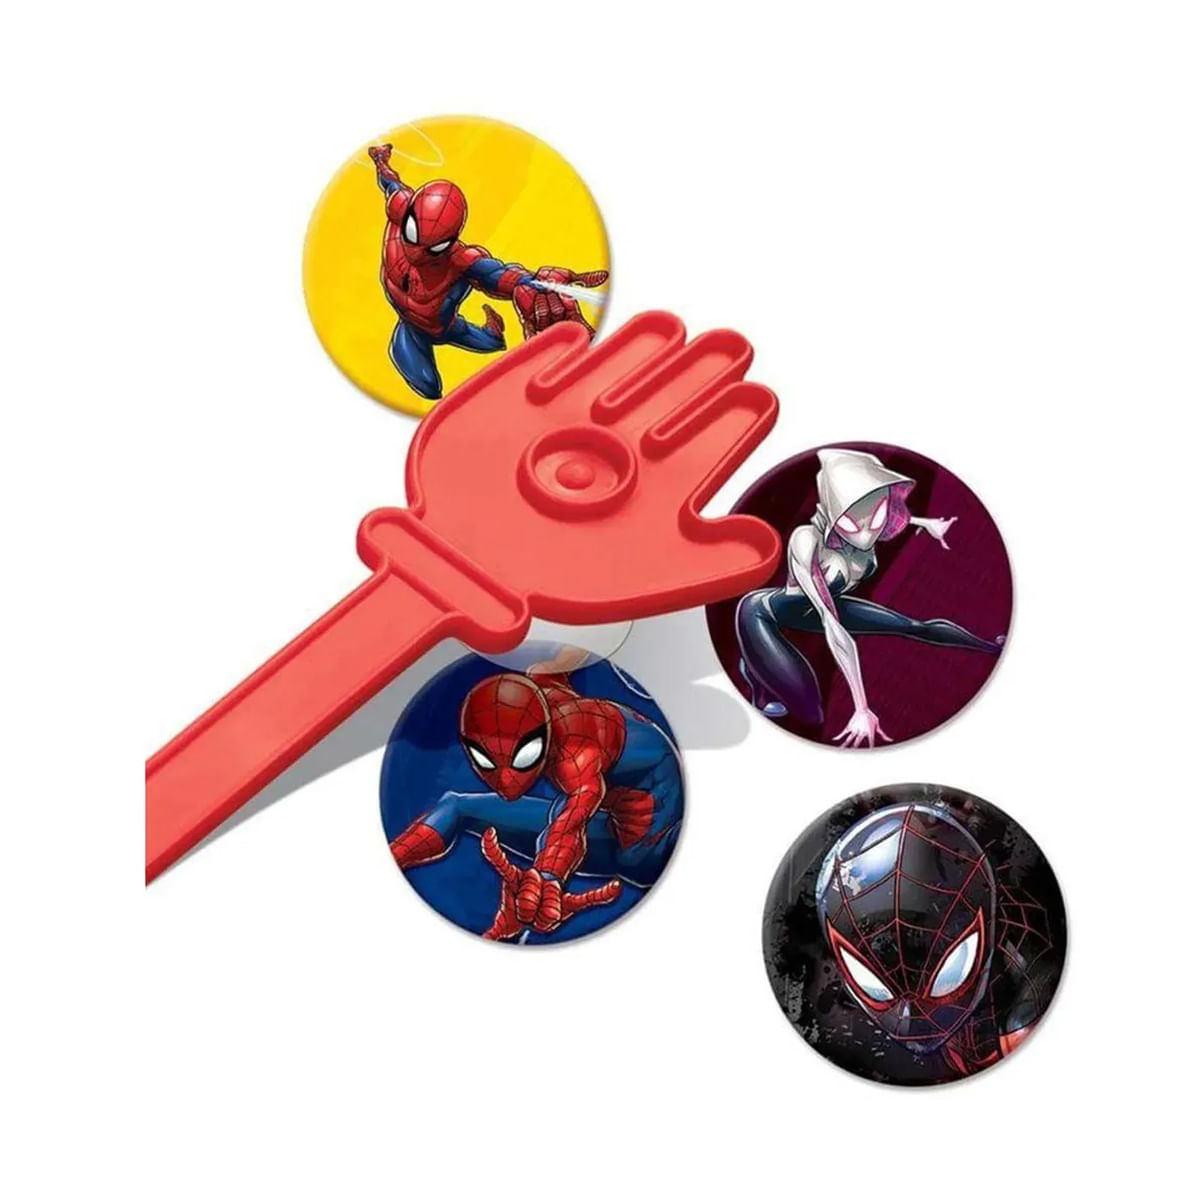 Jogo de Carta Tapão: Homem-Aranha - Copag - Toyshow Tudo de Marvel